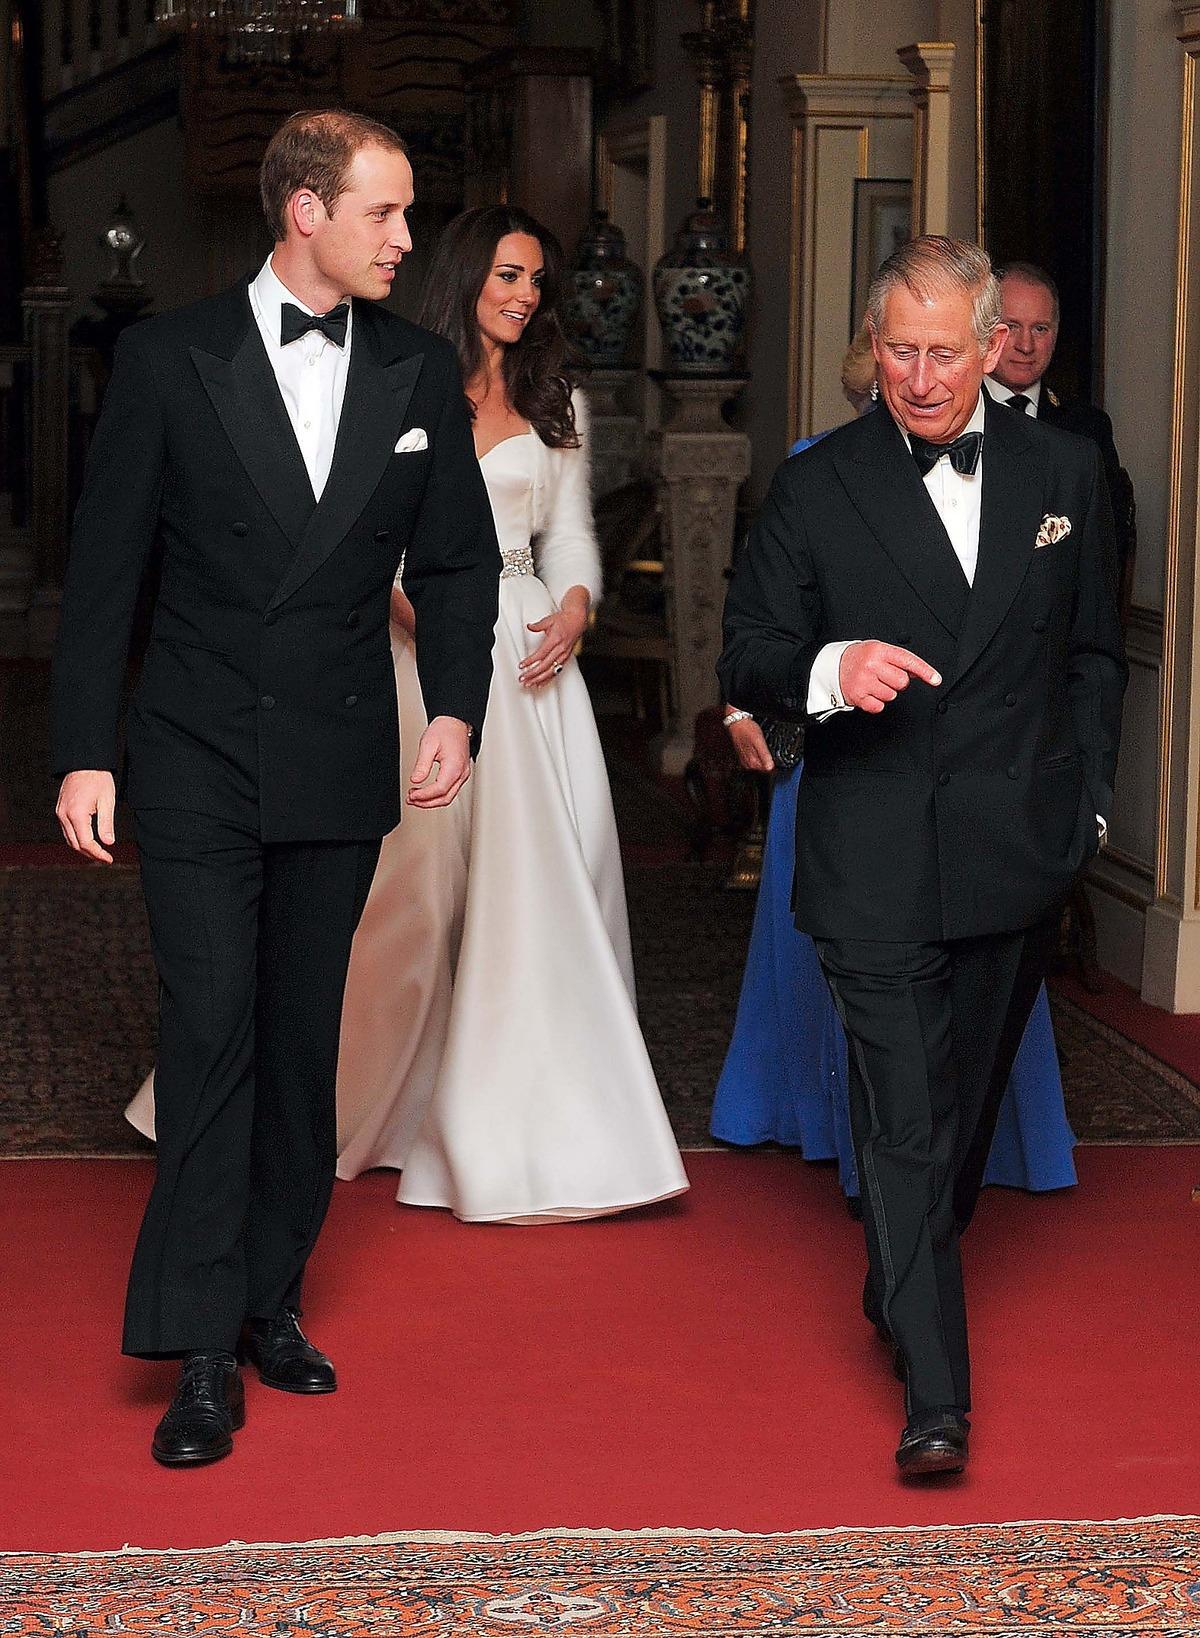 Prins Charles lämnade festen strax efter midnatt för att de unga skulle kunna släppa loss rejält. Vänner till brudparet hade ordnat en nattklubbsinspirerad fest som pågick ända in på morgonen.